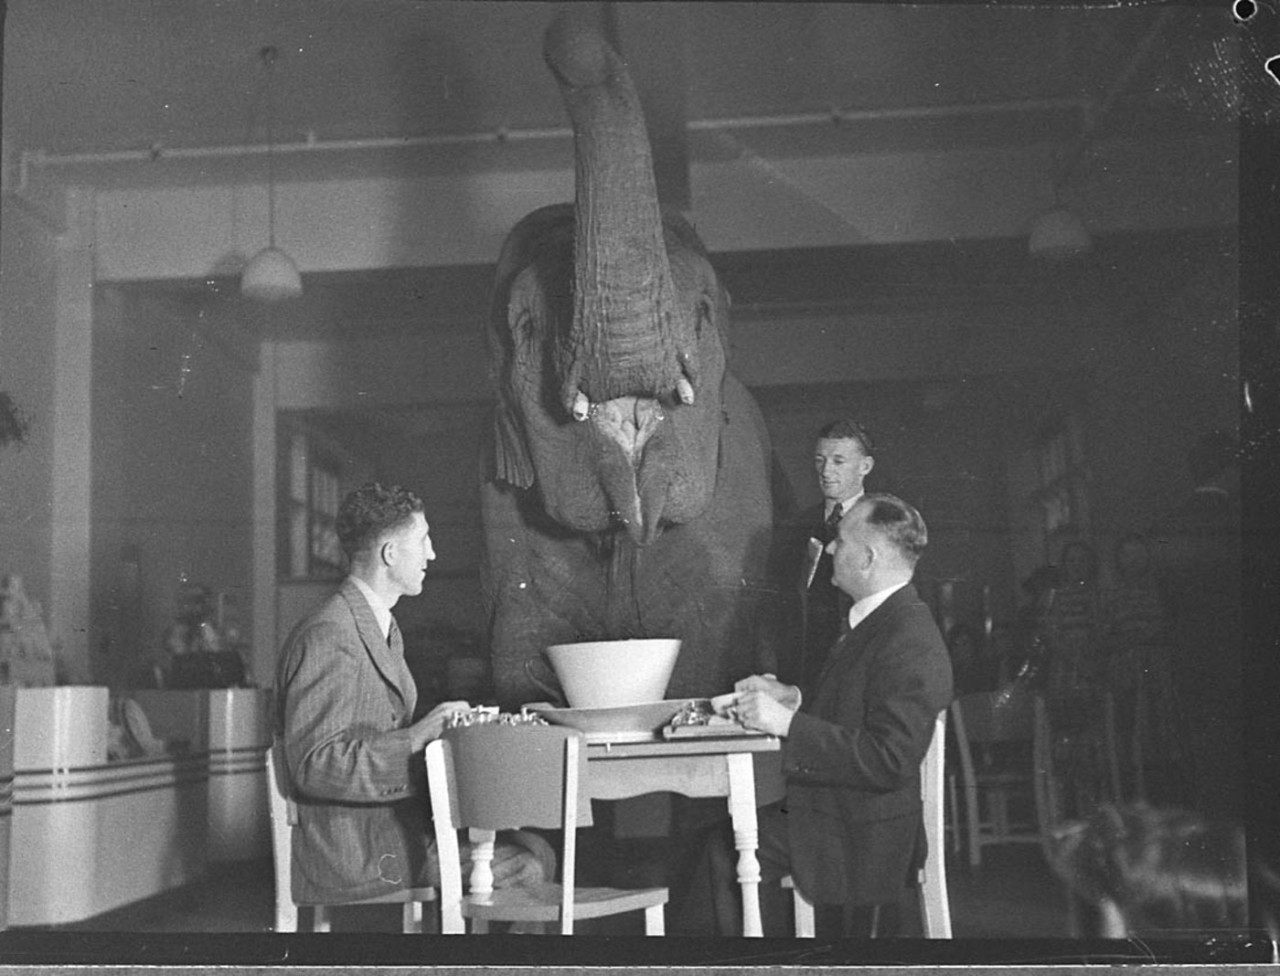 Elephant&#8217;s tea party, Robur Tea Room, 24 March 1939, by Sam Hood